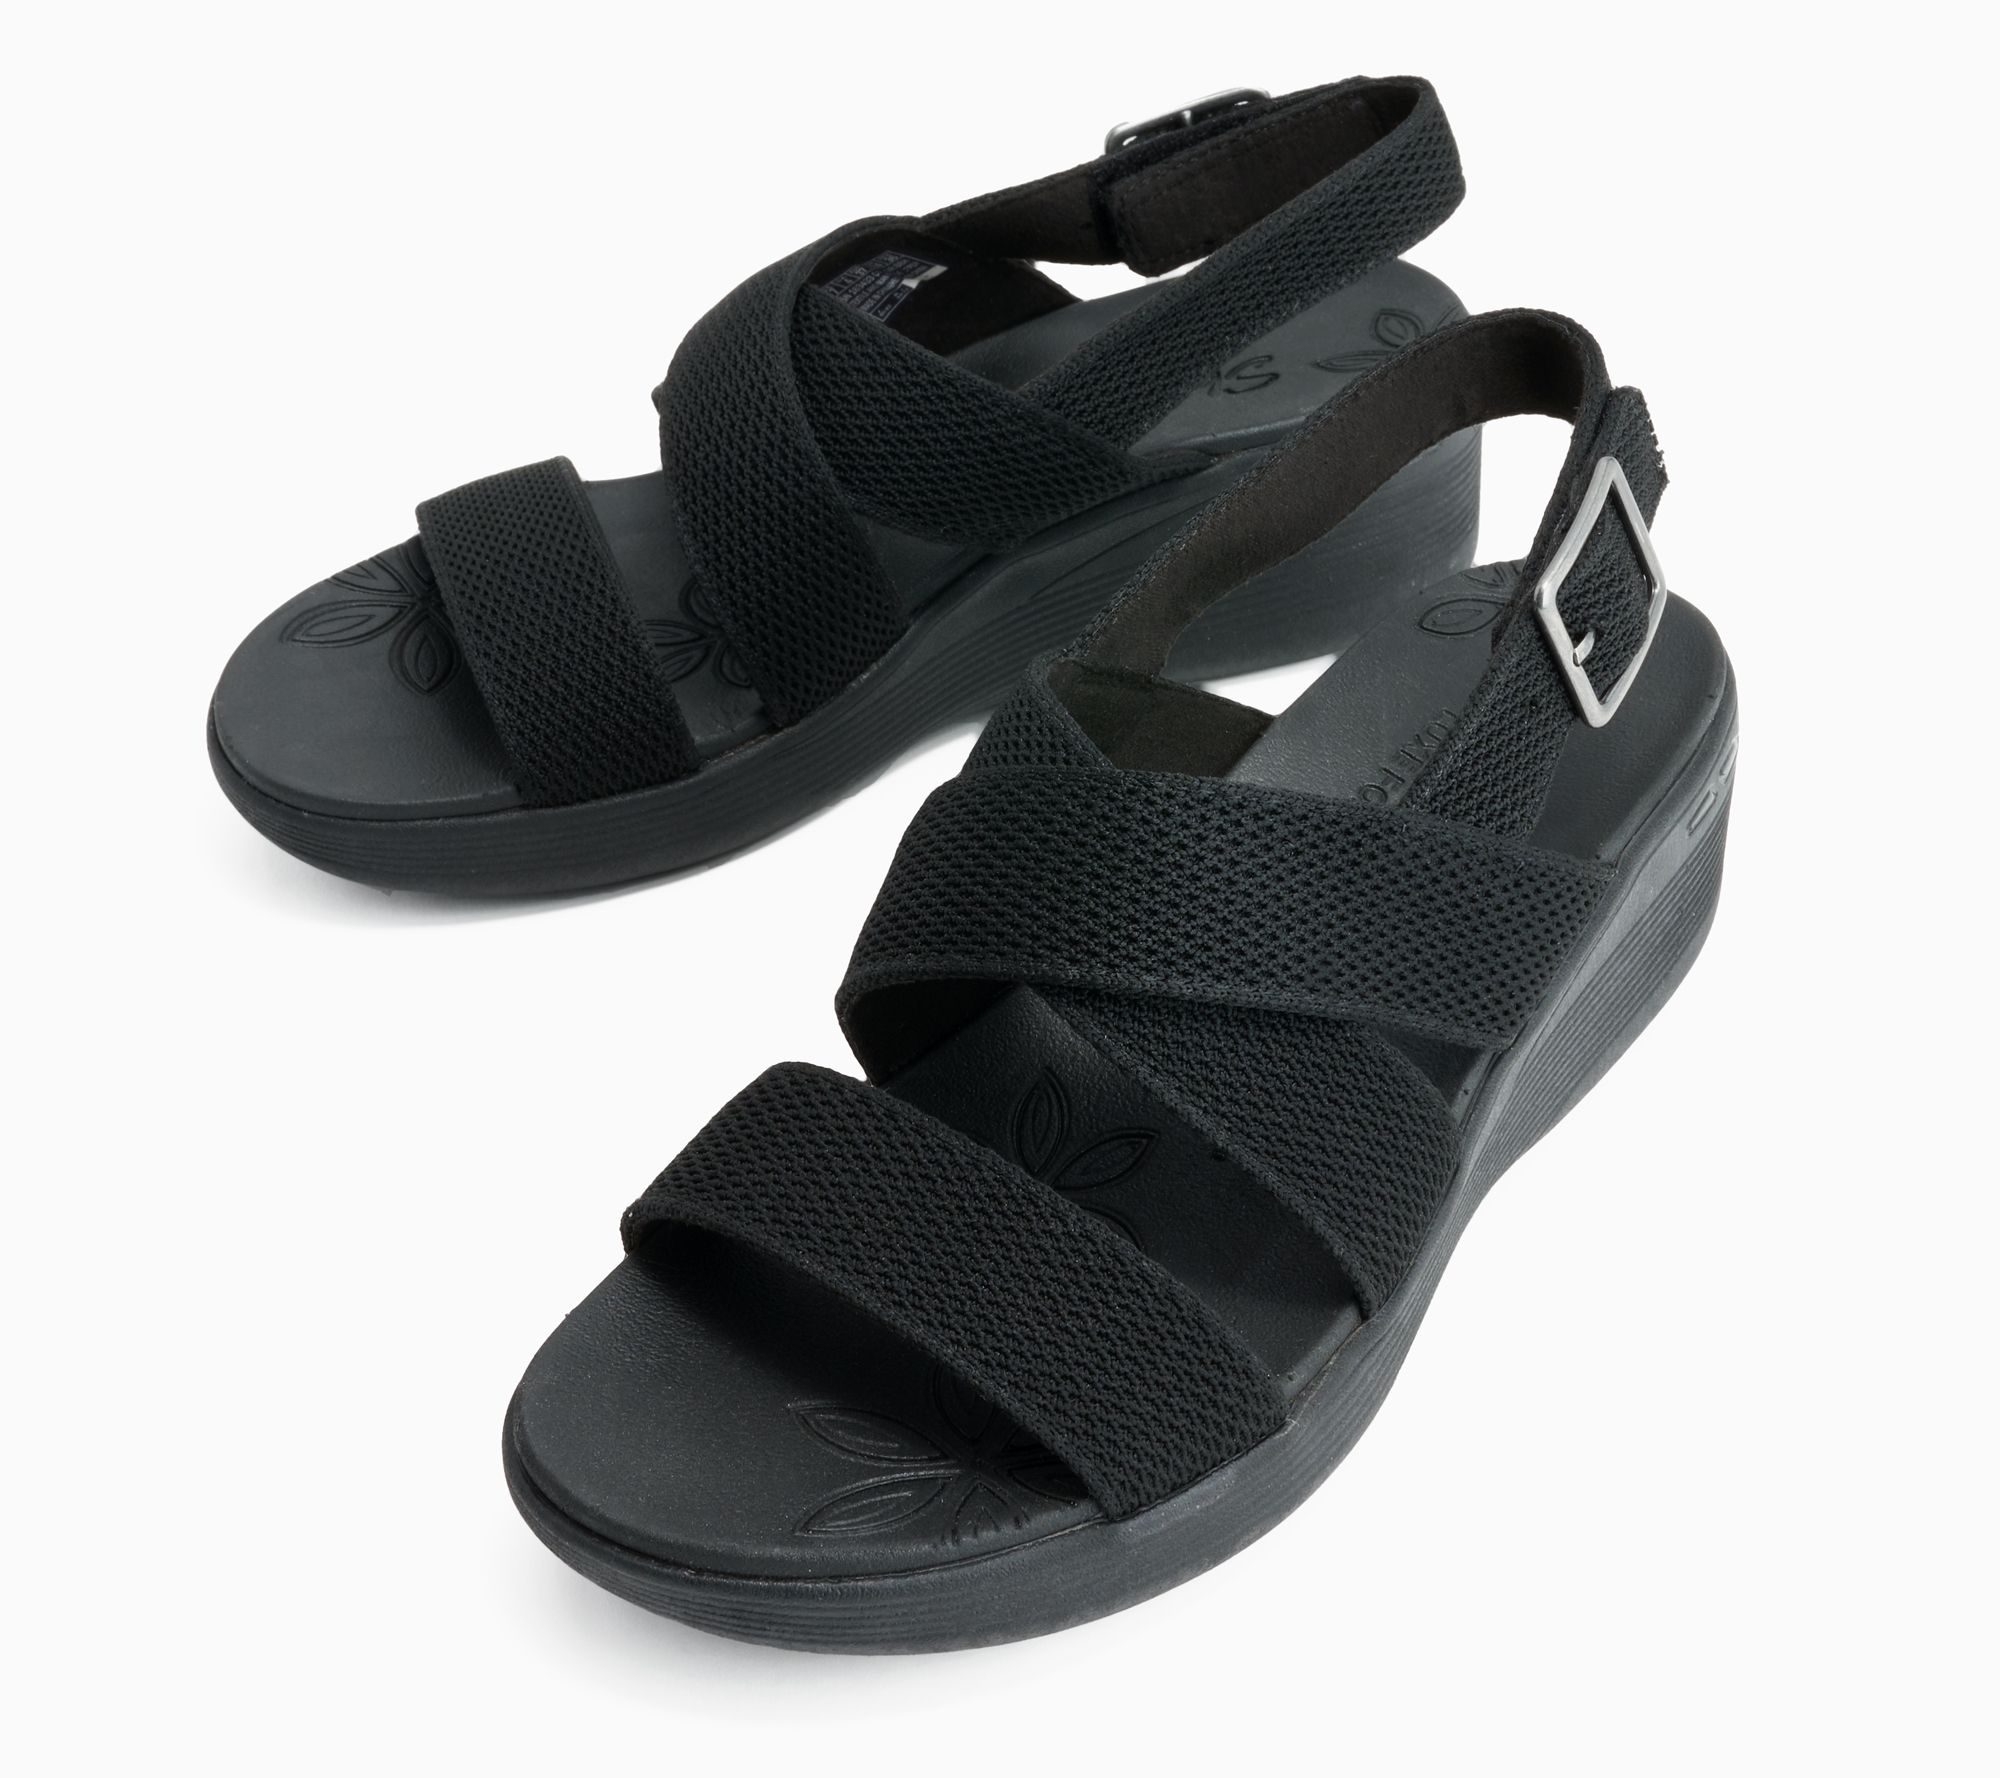 Skechers GOwalk Flex Arch Fit Vegan Washable Knit Sandals